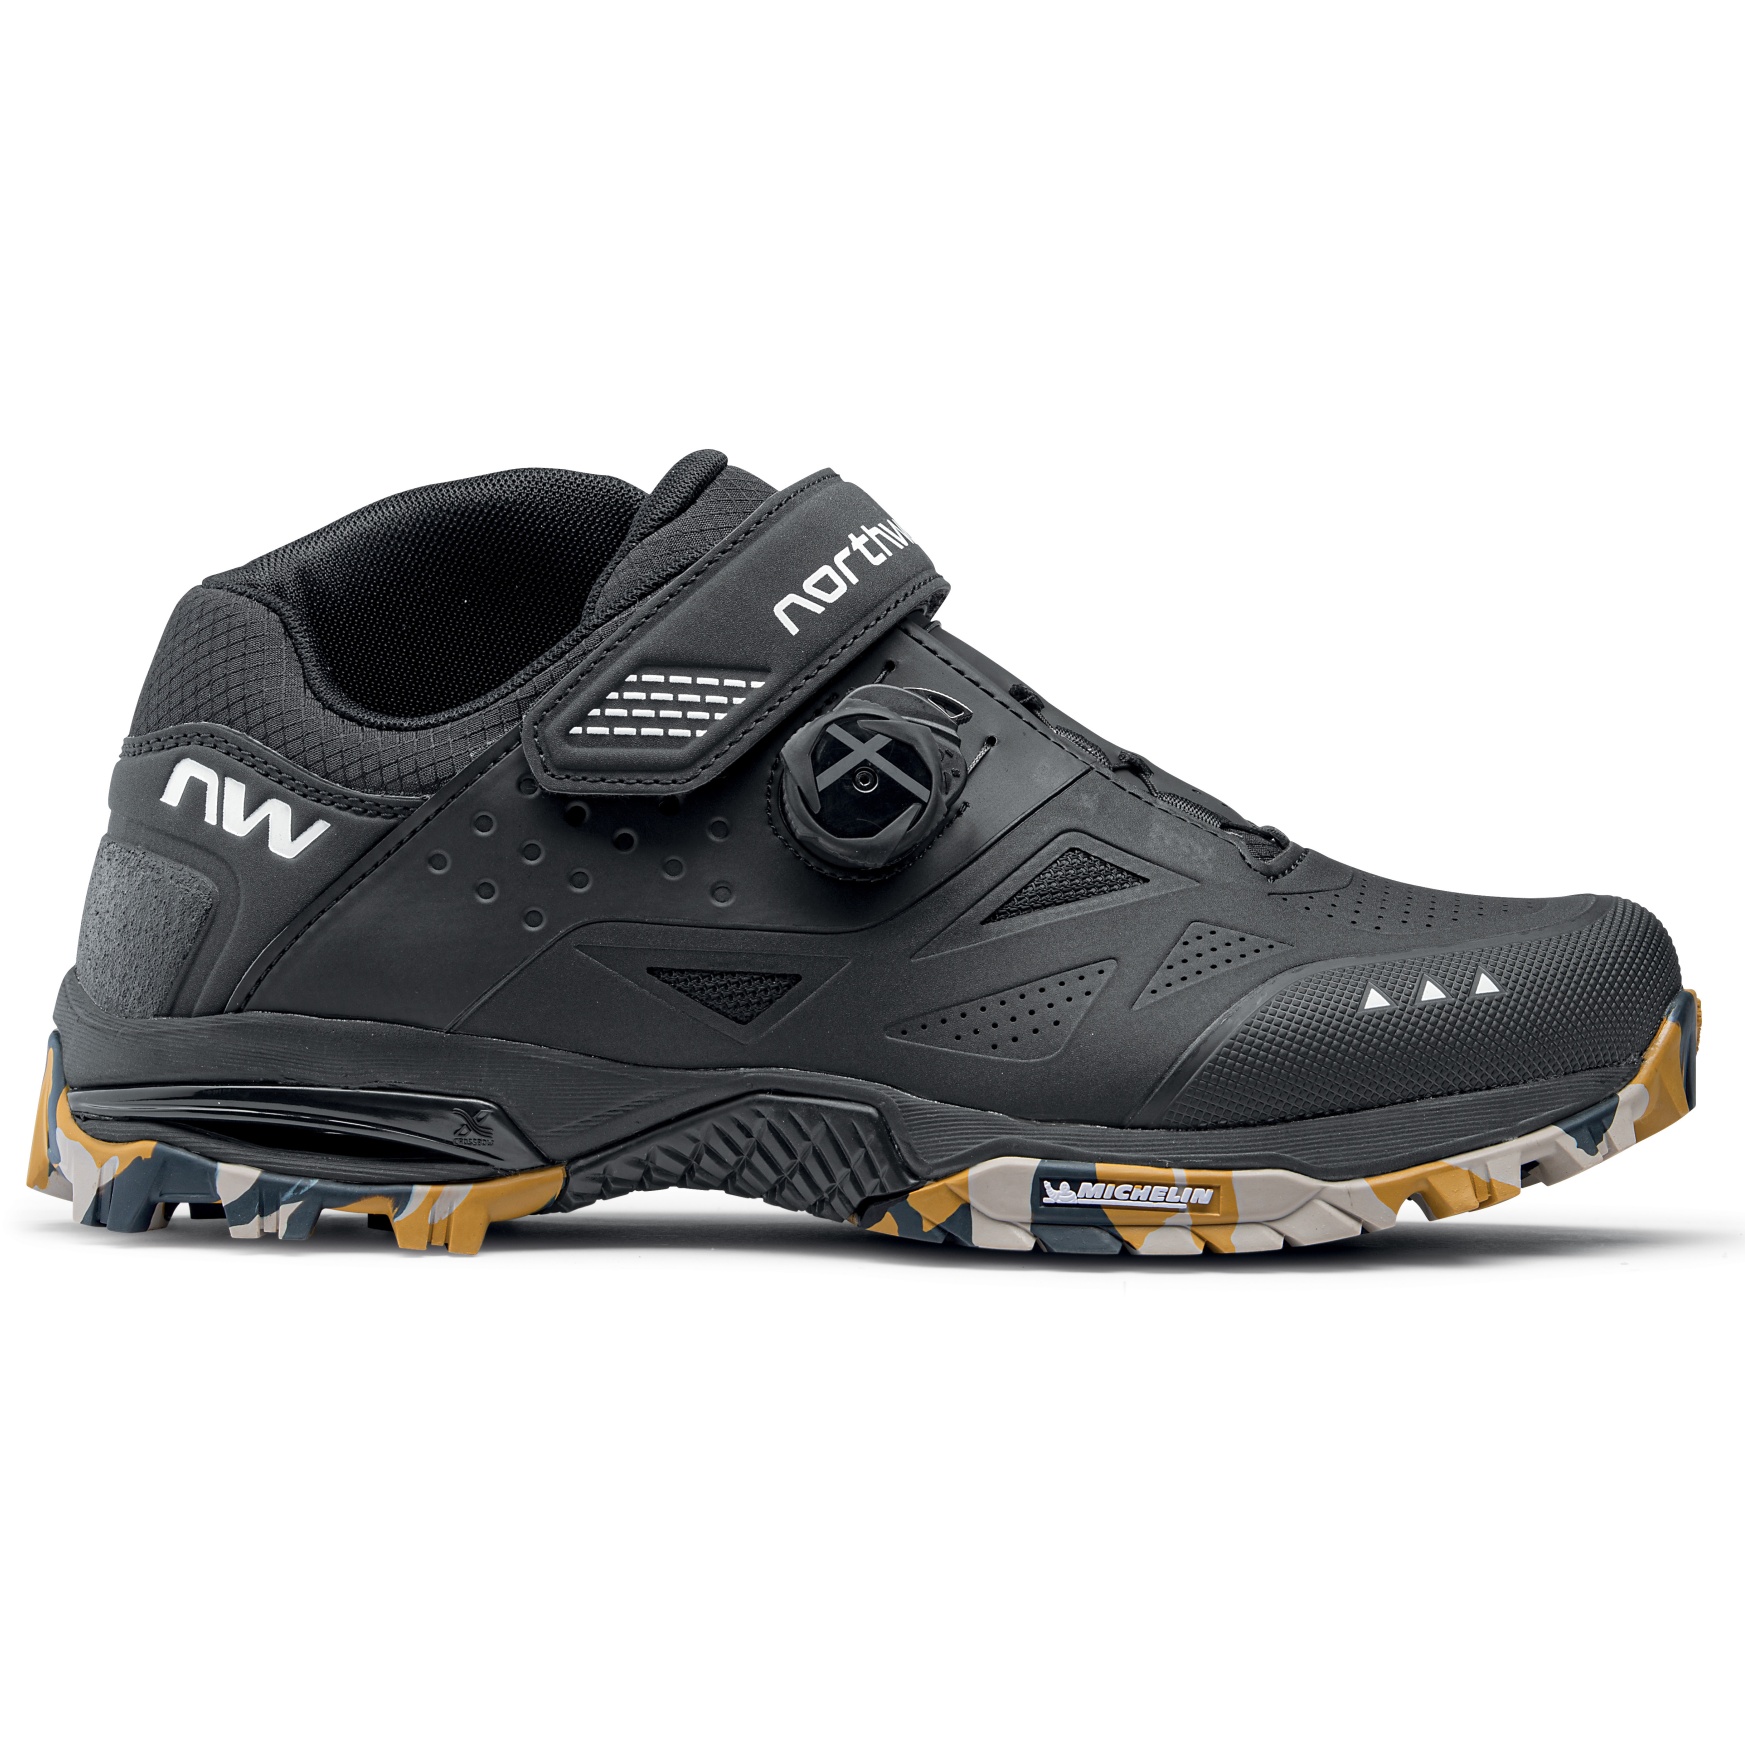 Produktbild von Northwave Enduro Mid 2 All Terrain Schuhe Herren - schwarz/camo sole 60